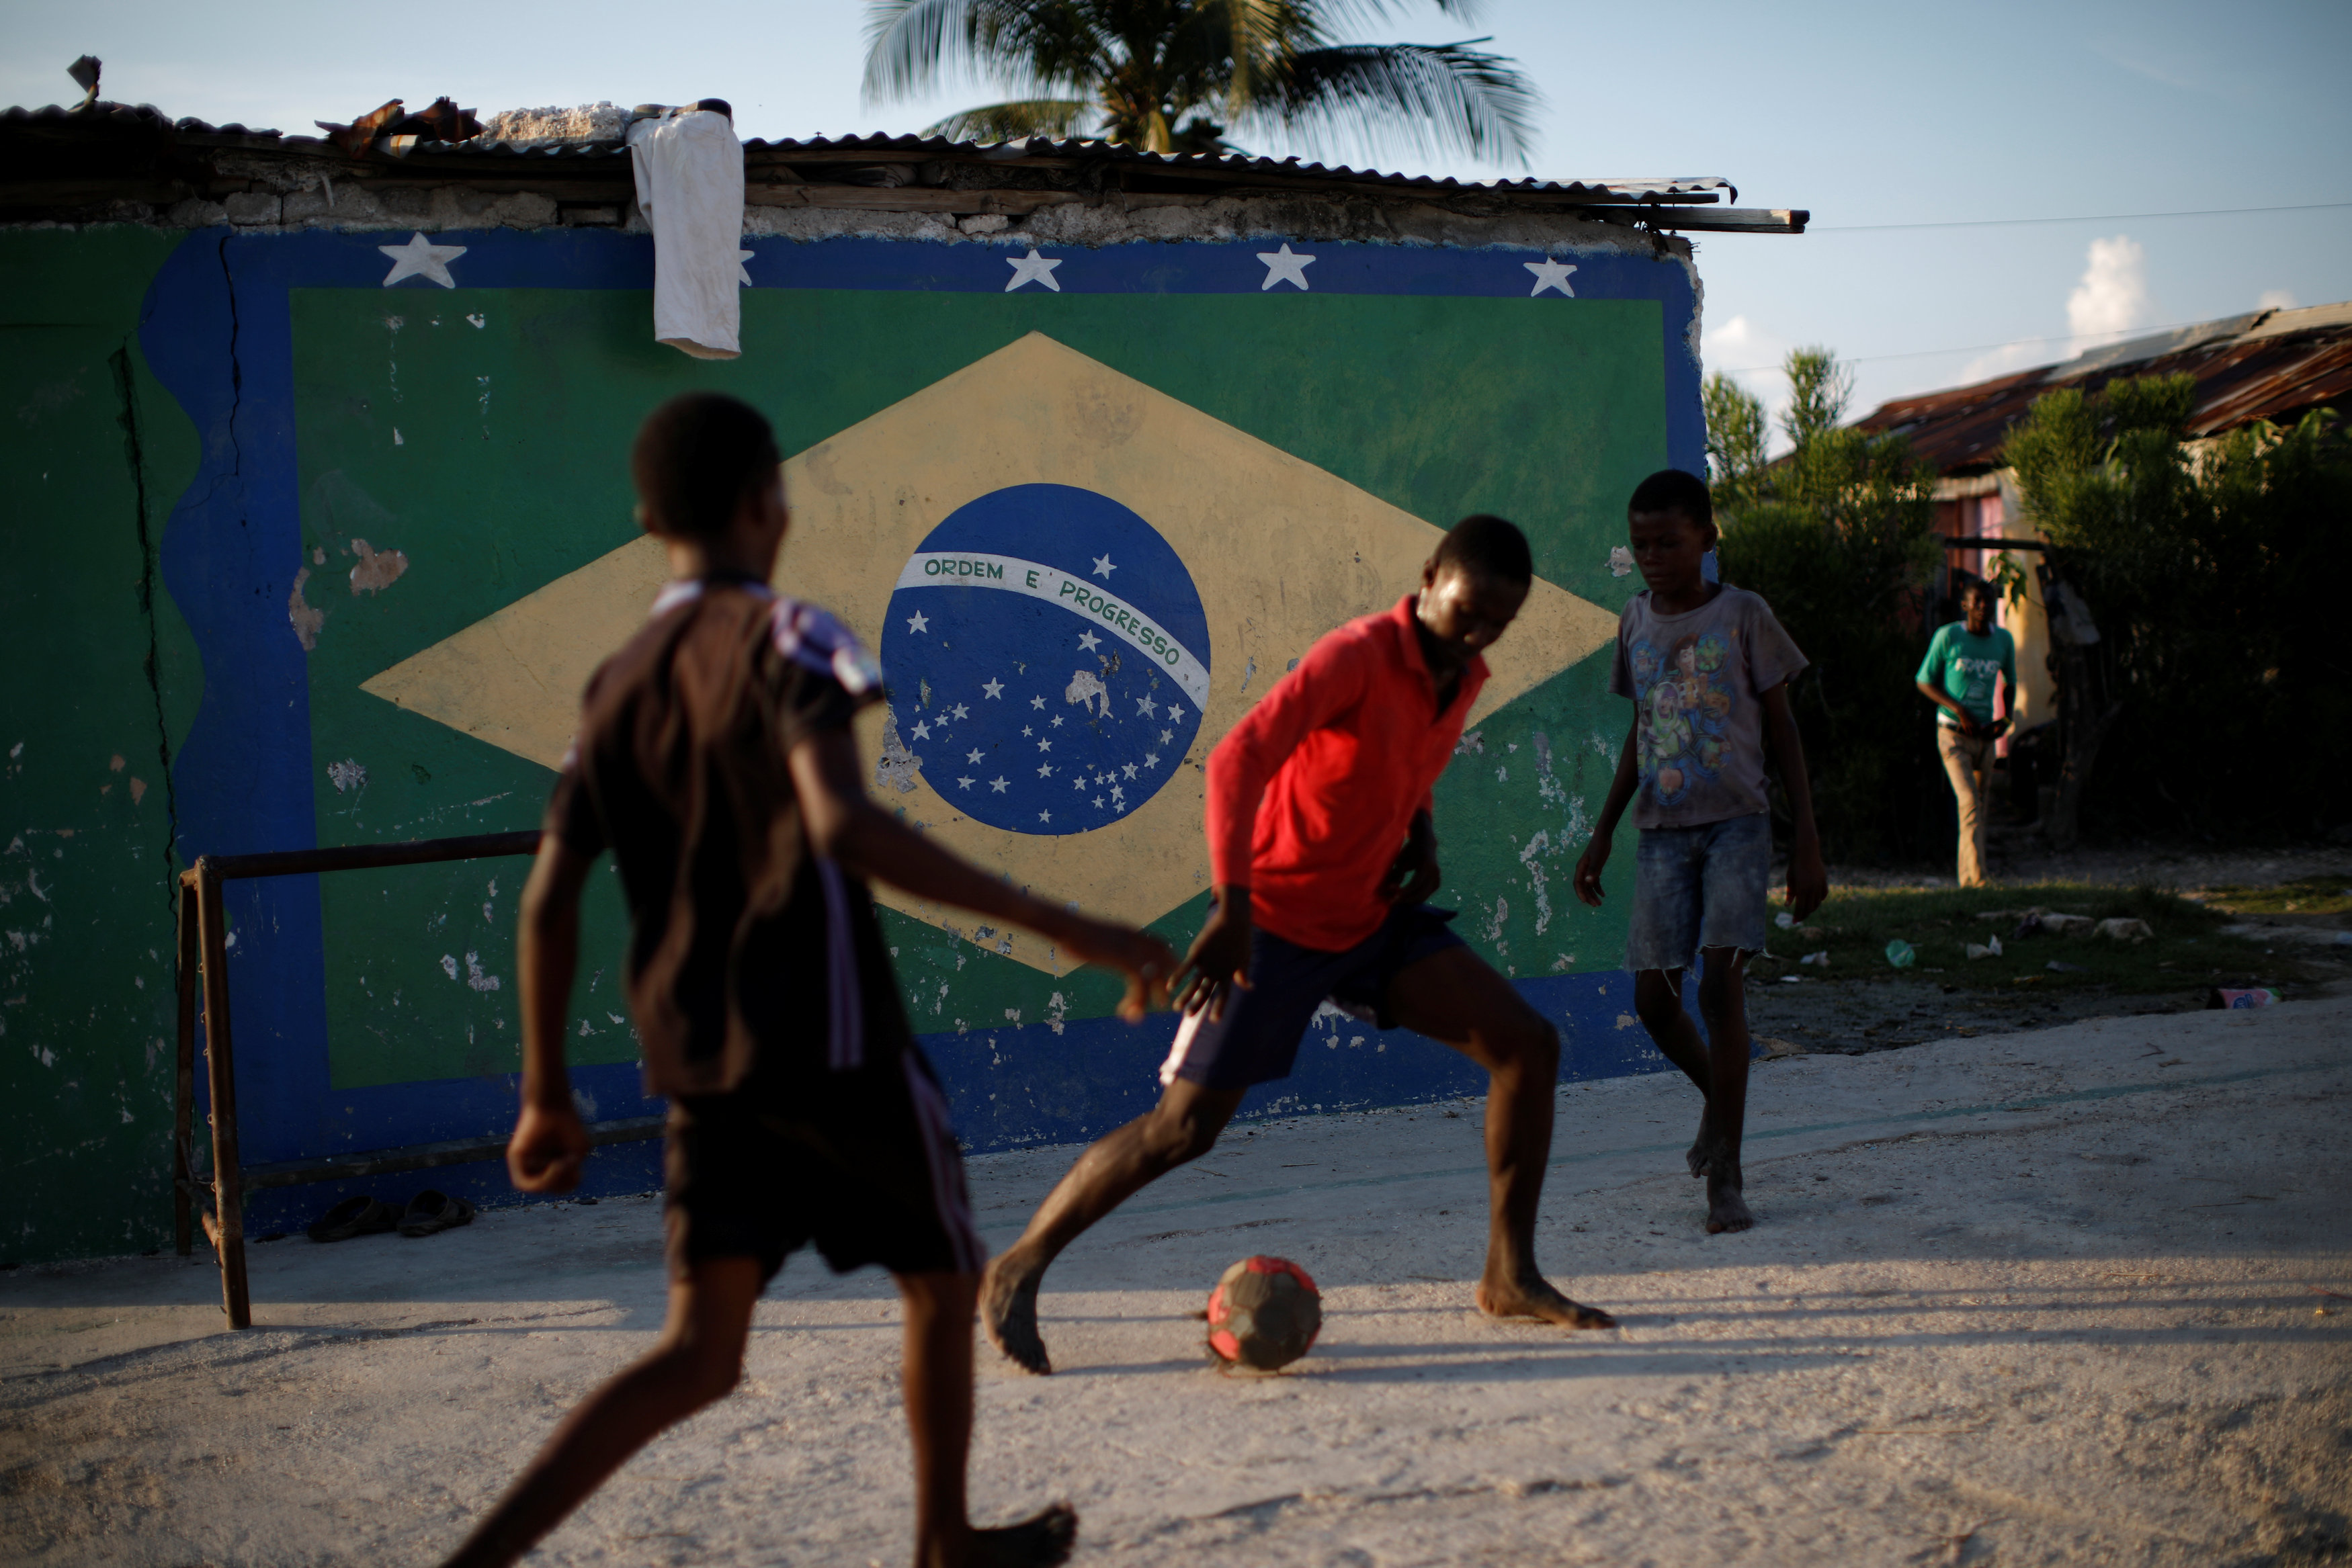 عدد من الفتيان يلعبون كرة قدم فى الحى الذى هاجمه هيلينو ويظهر بالخلفية علم البرازيل